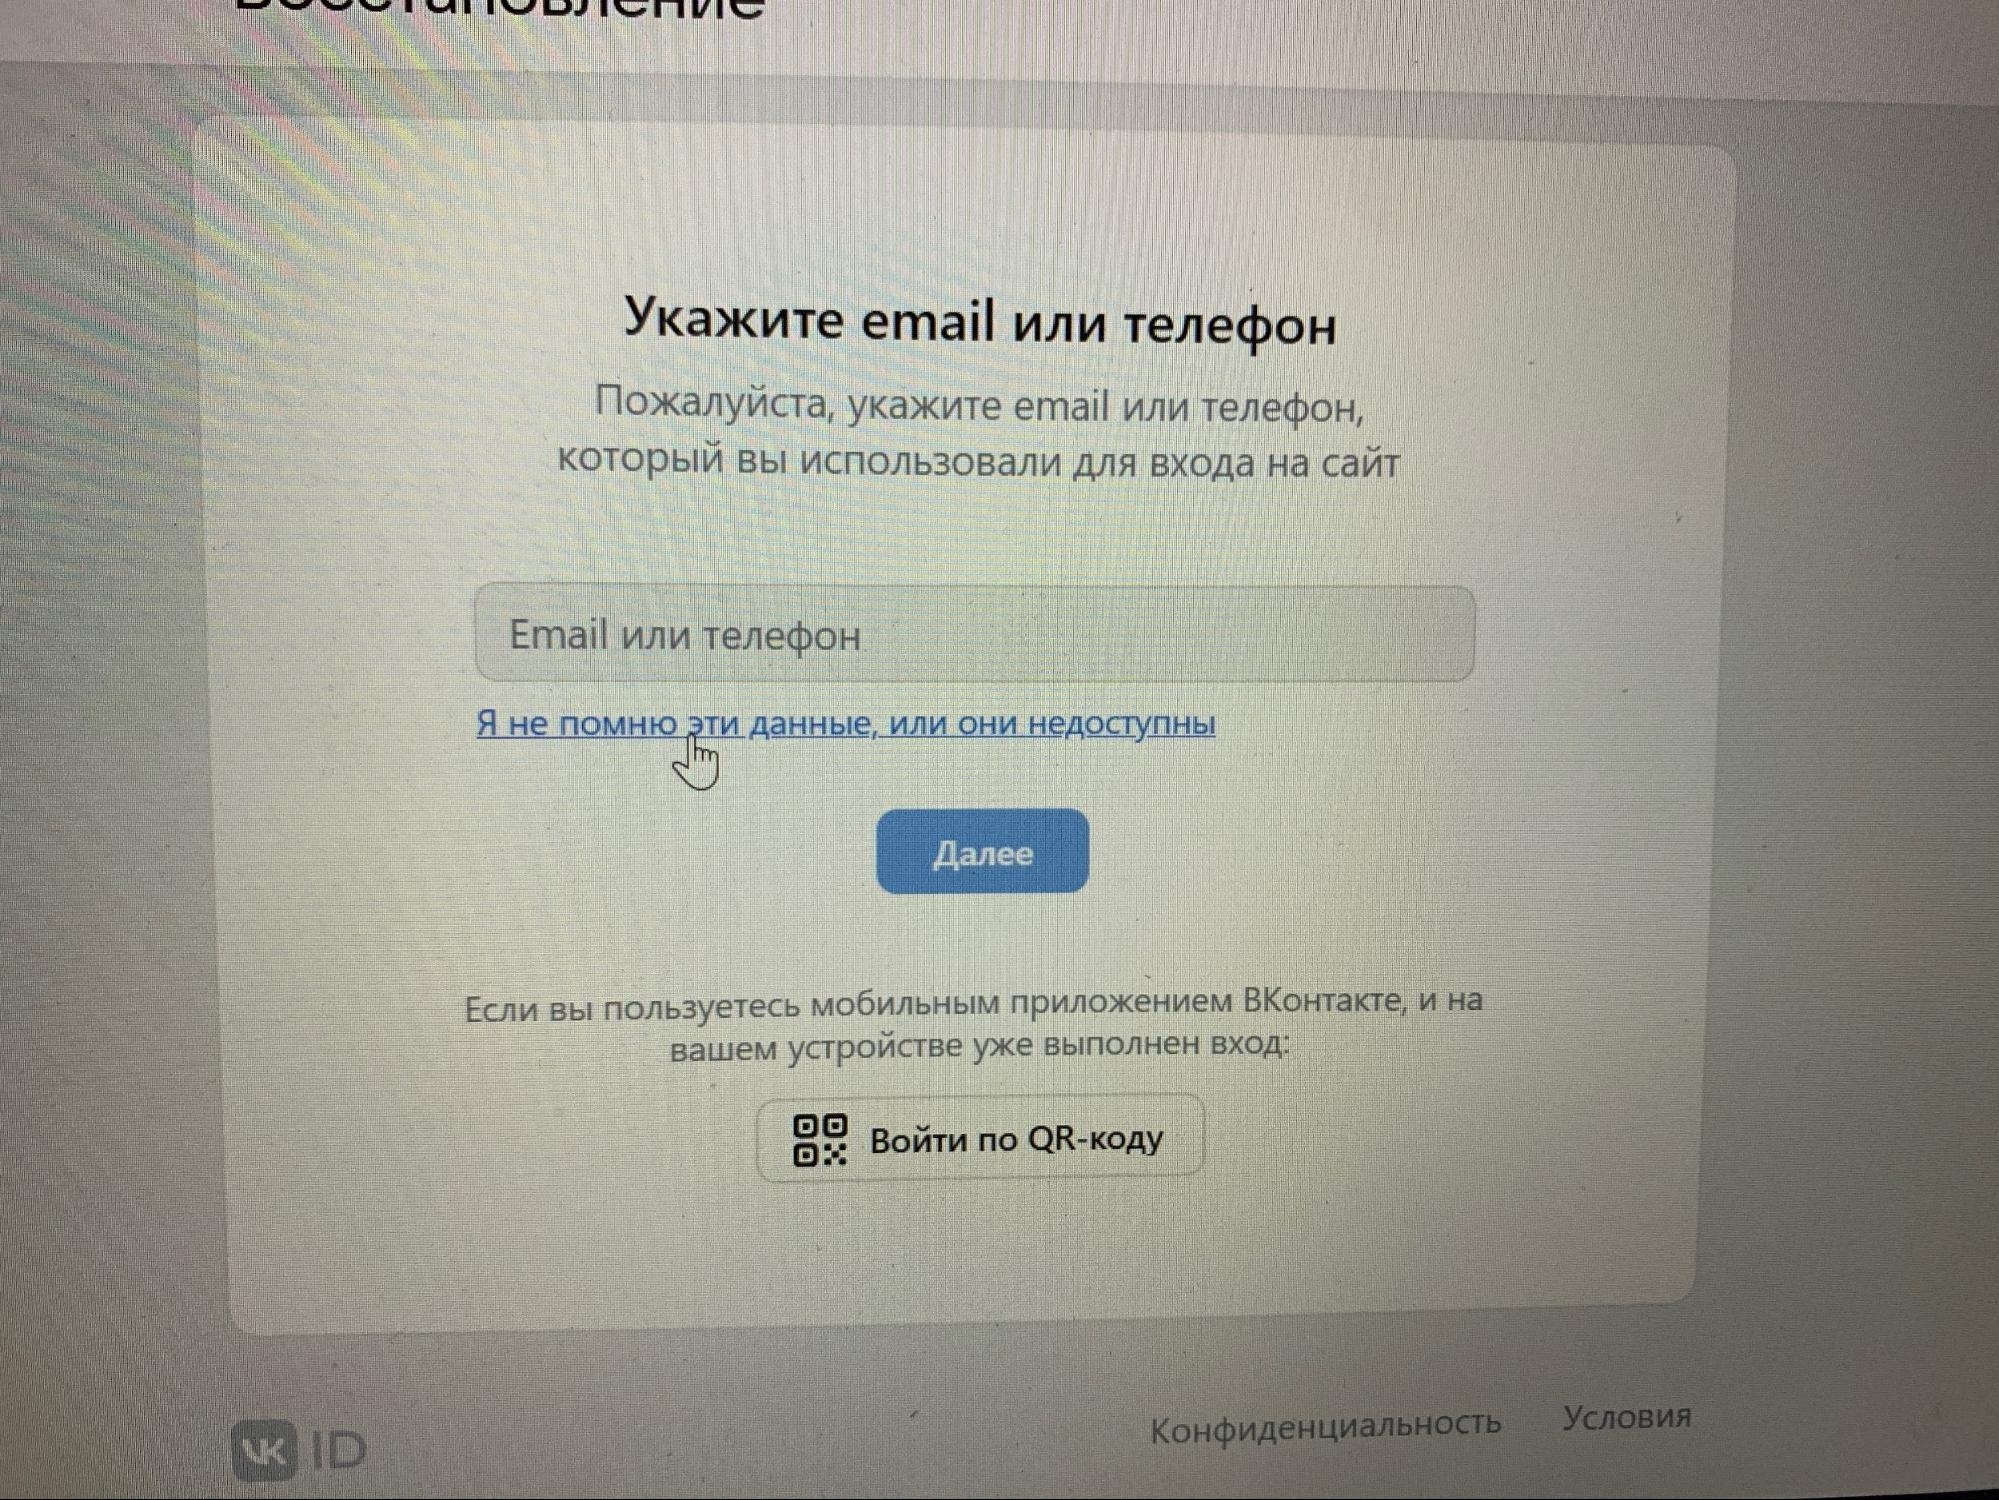 Почему заблокировали страницу ВКонтакте? За что? И на сколько времени?